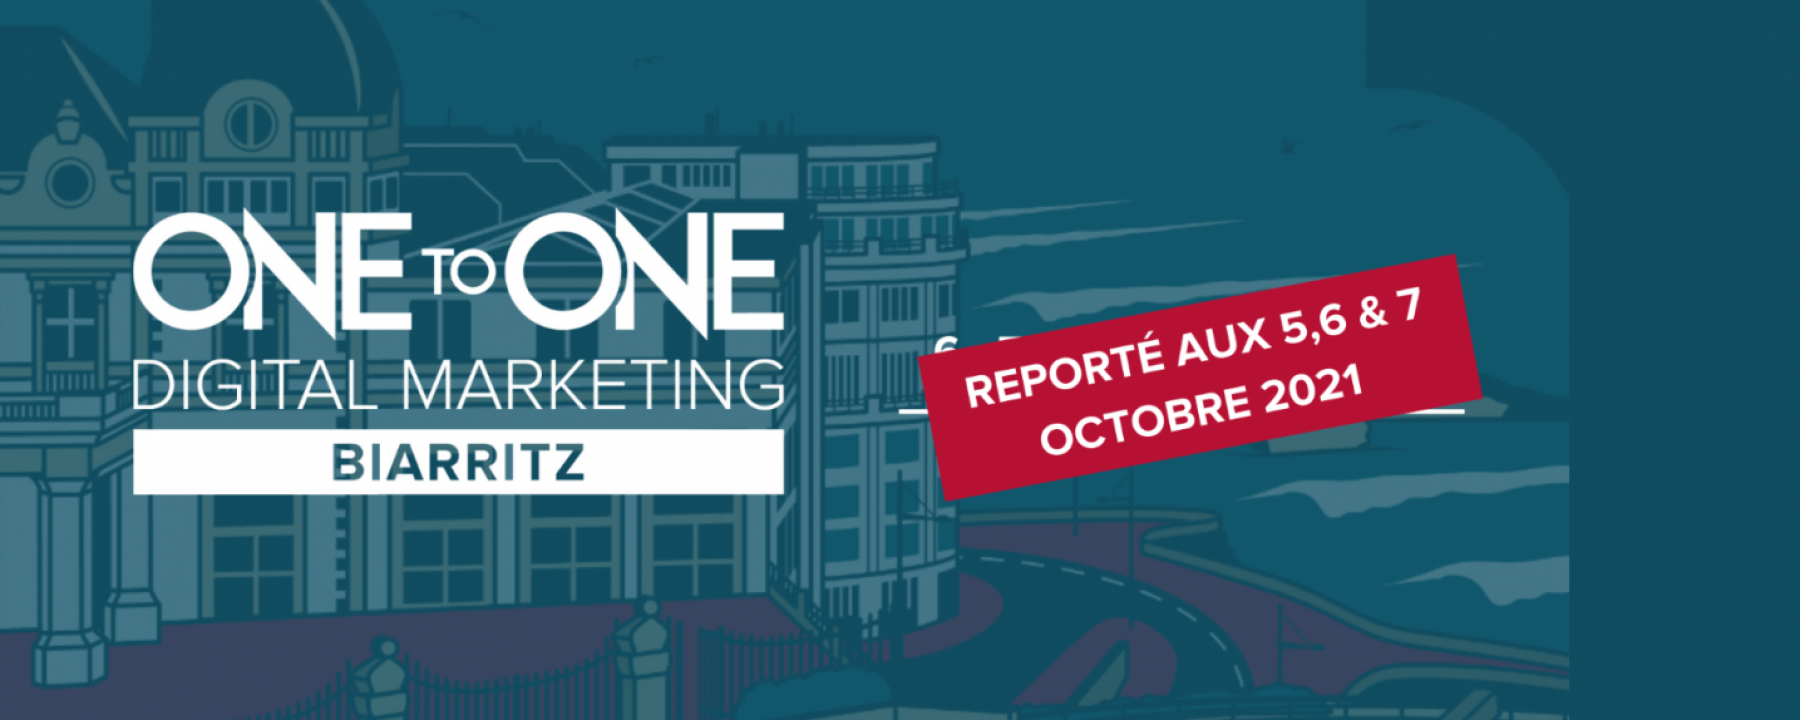 One to One Biarritz, organisé par Comexposium du 6 au 8 octobre 2021